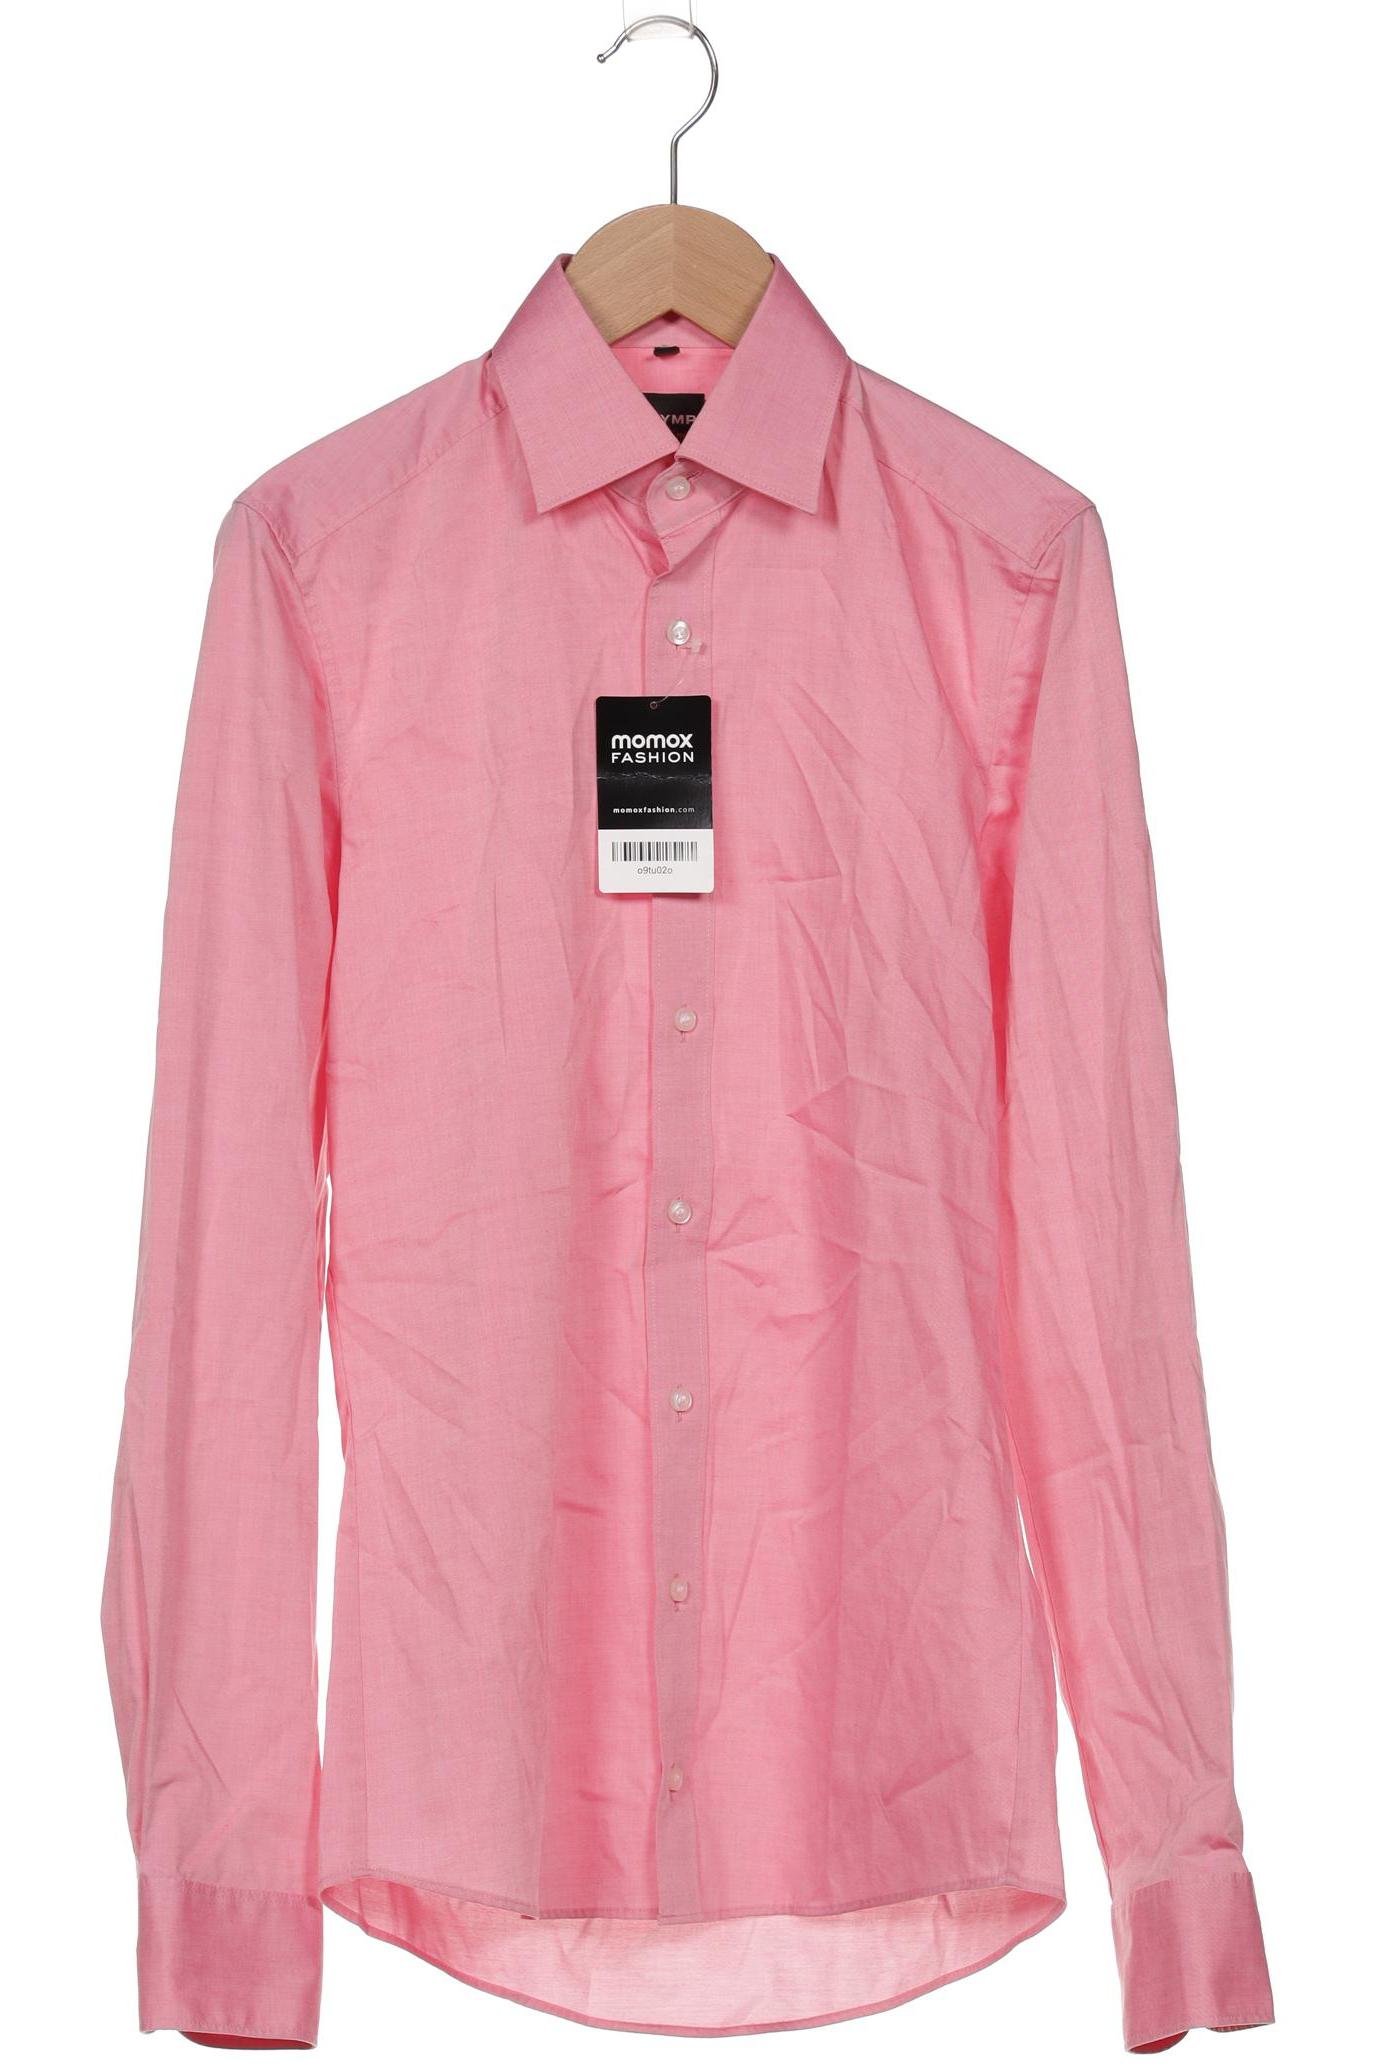 Olymp Herren Hemd, pink, Gr. 42 von Olymp